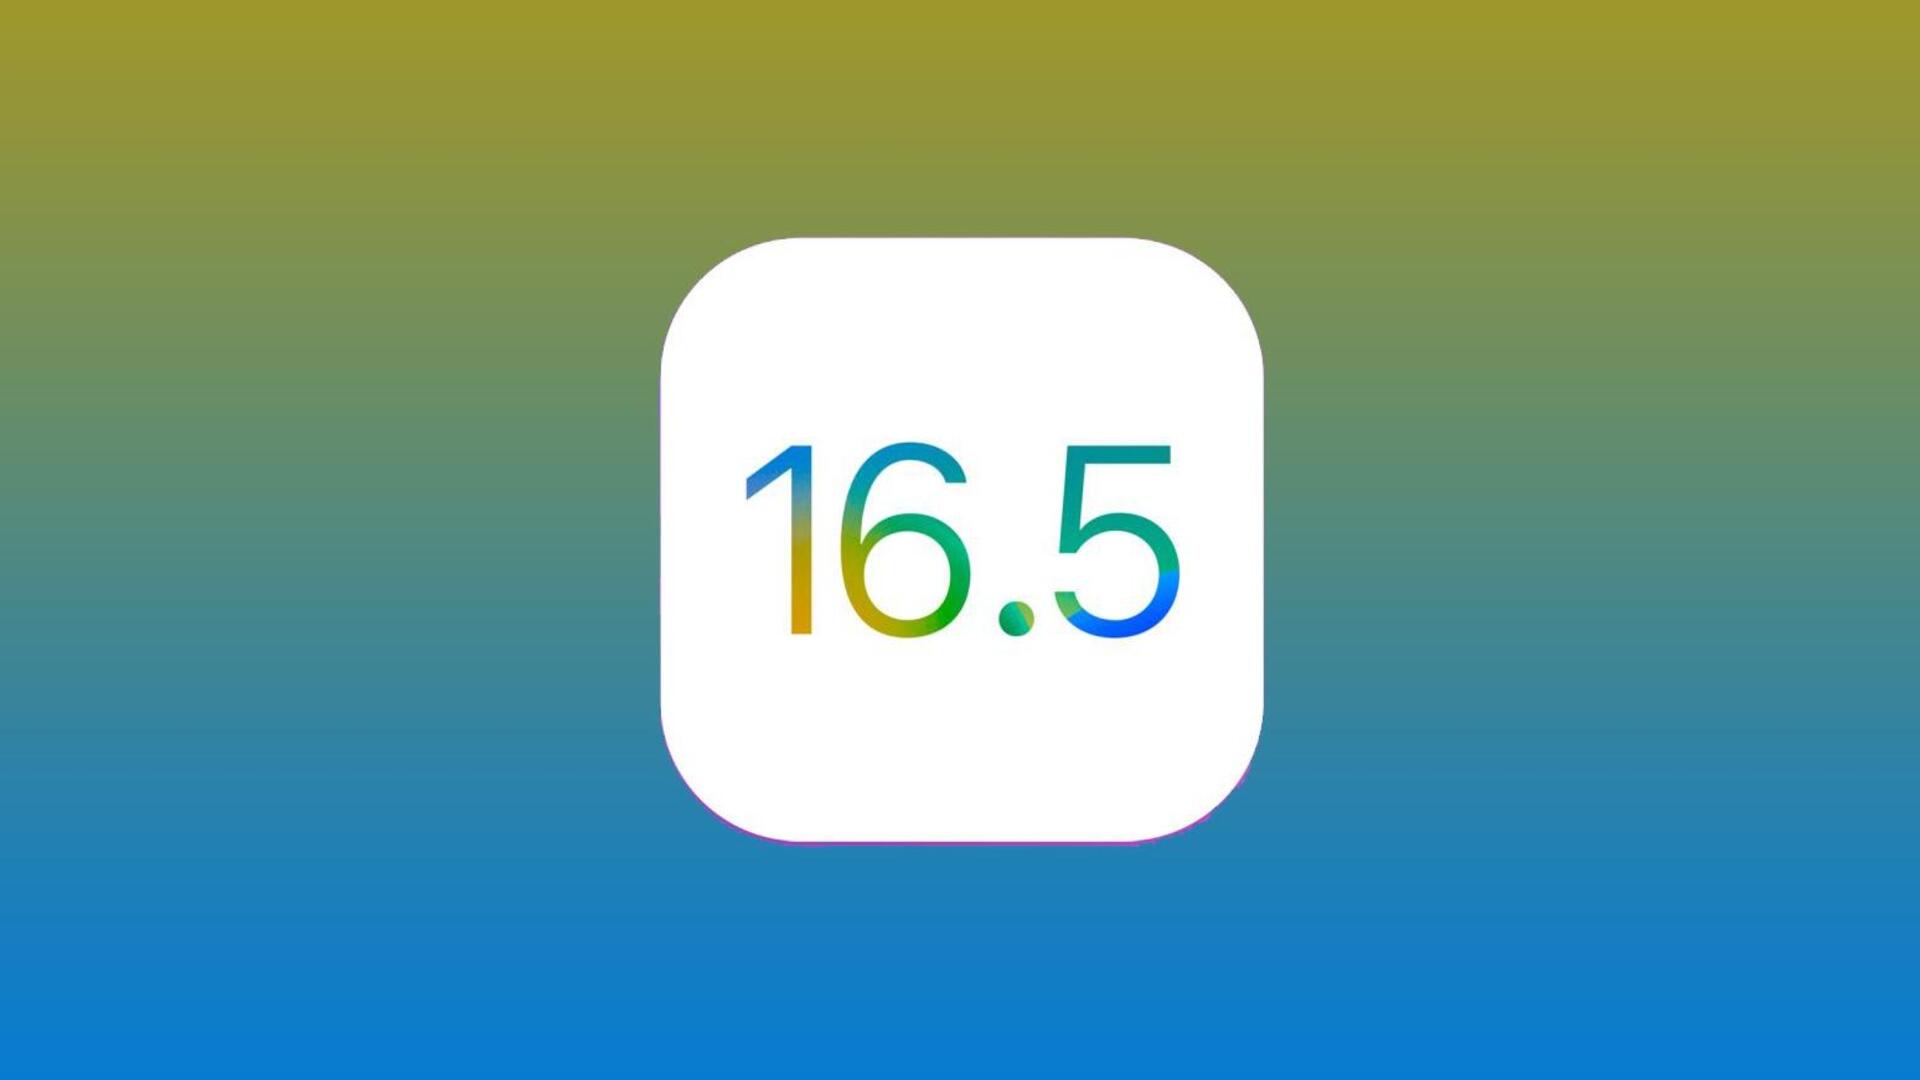 iOS 16.5 अपडेट अगले हफ्ते हो सकता है रिलीज, मिलेंगे कई खास फीचर्स